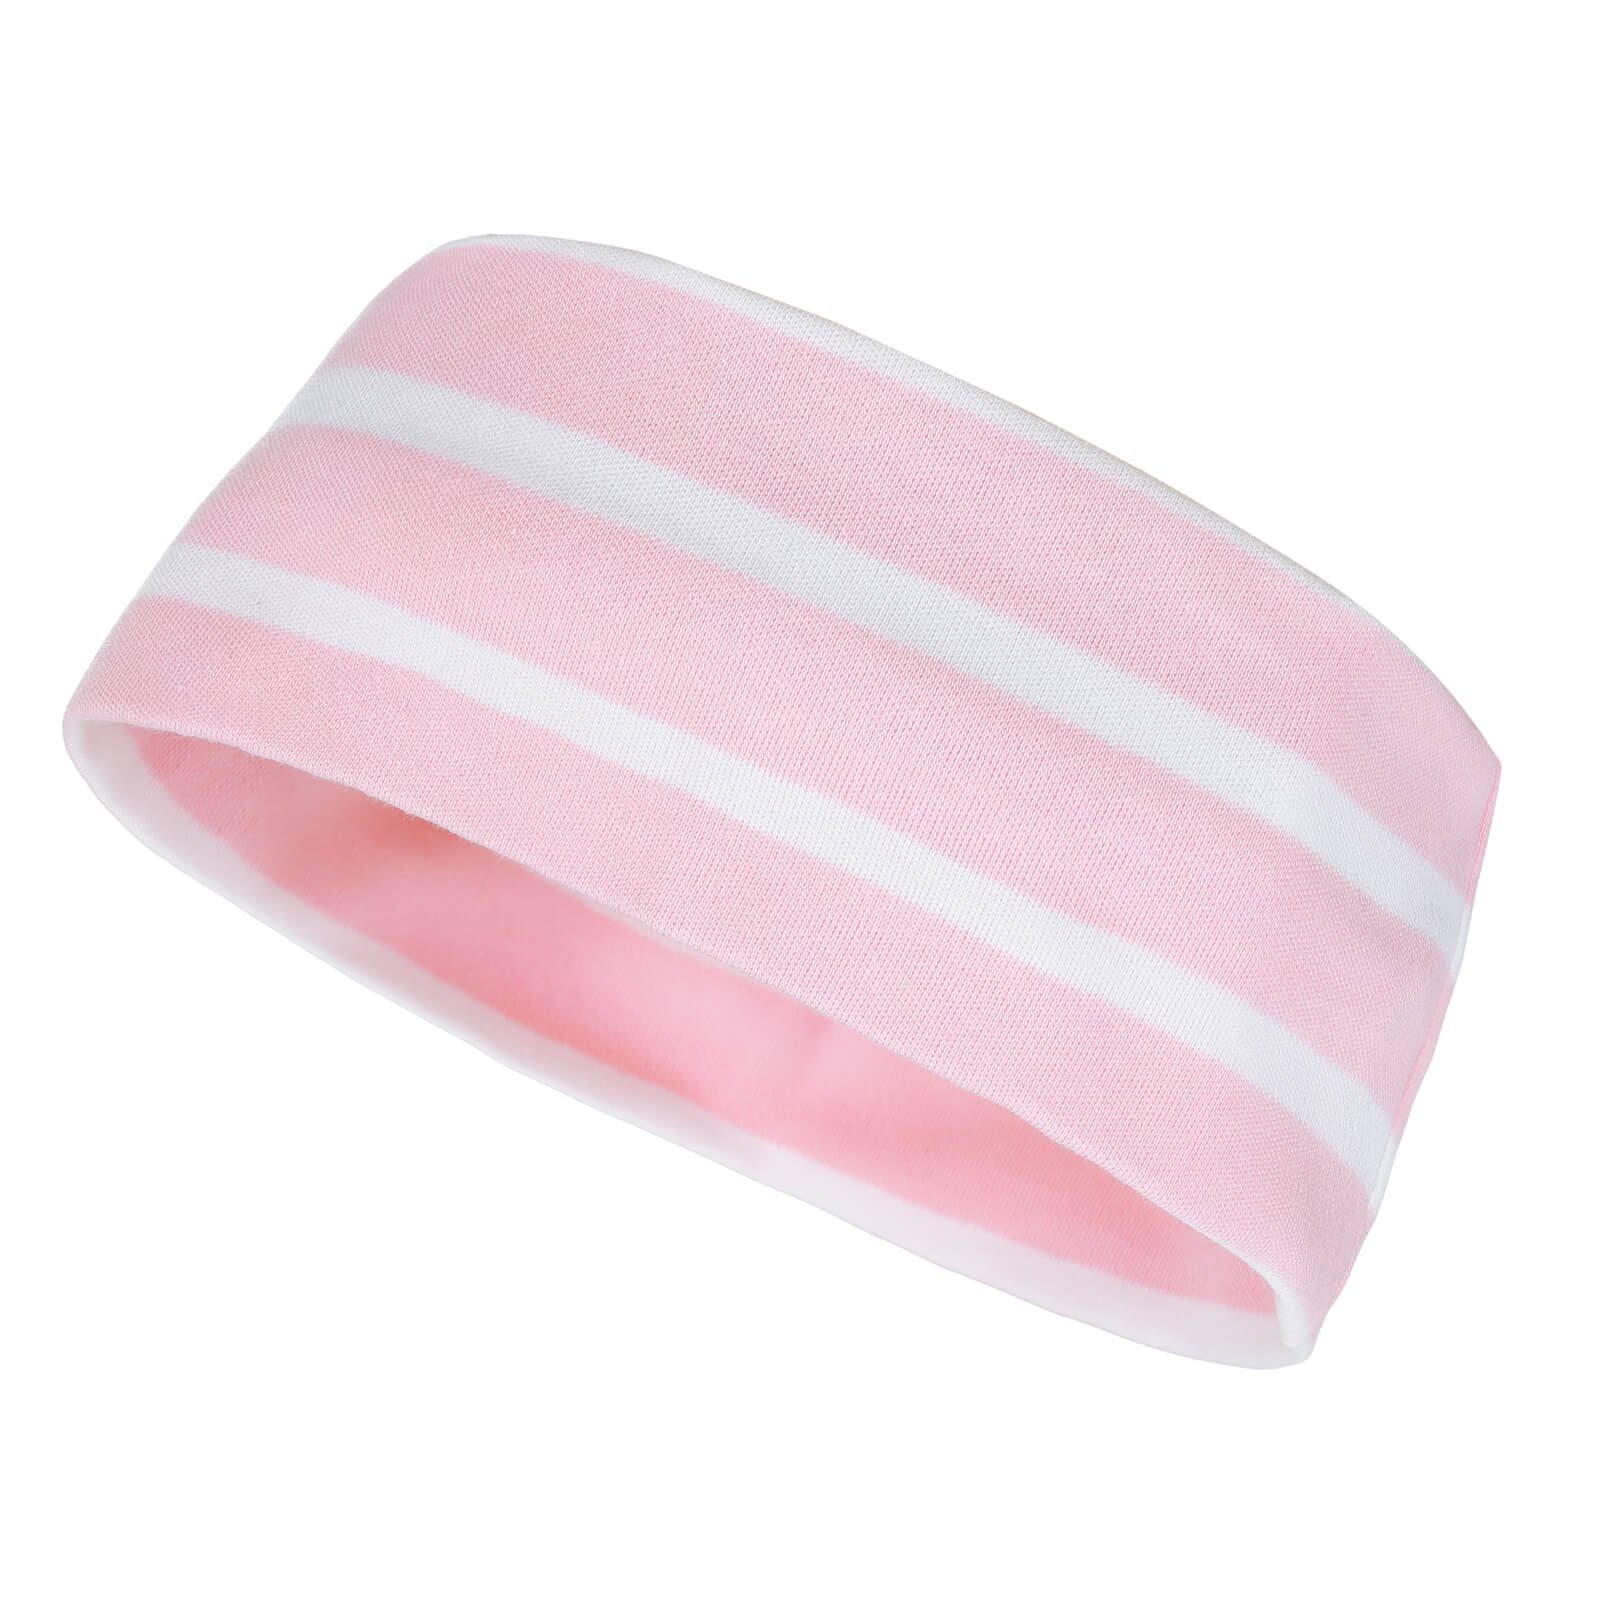 Erwachsene (14) weiß Unisex und zweilagig rosa Baumwolle Kinder Maritim / Kopfband Stirnband für modAS